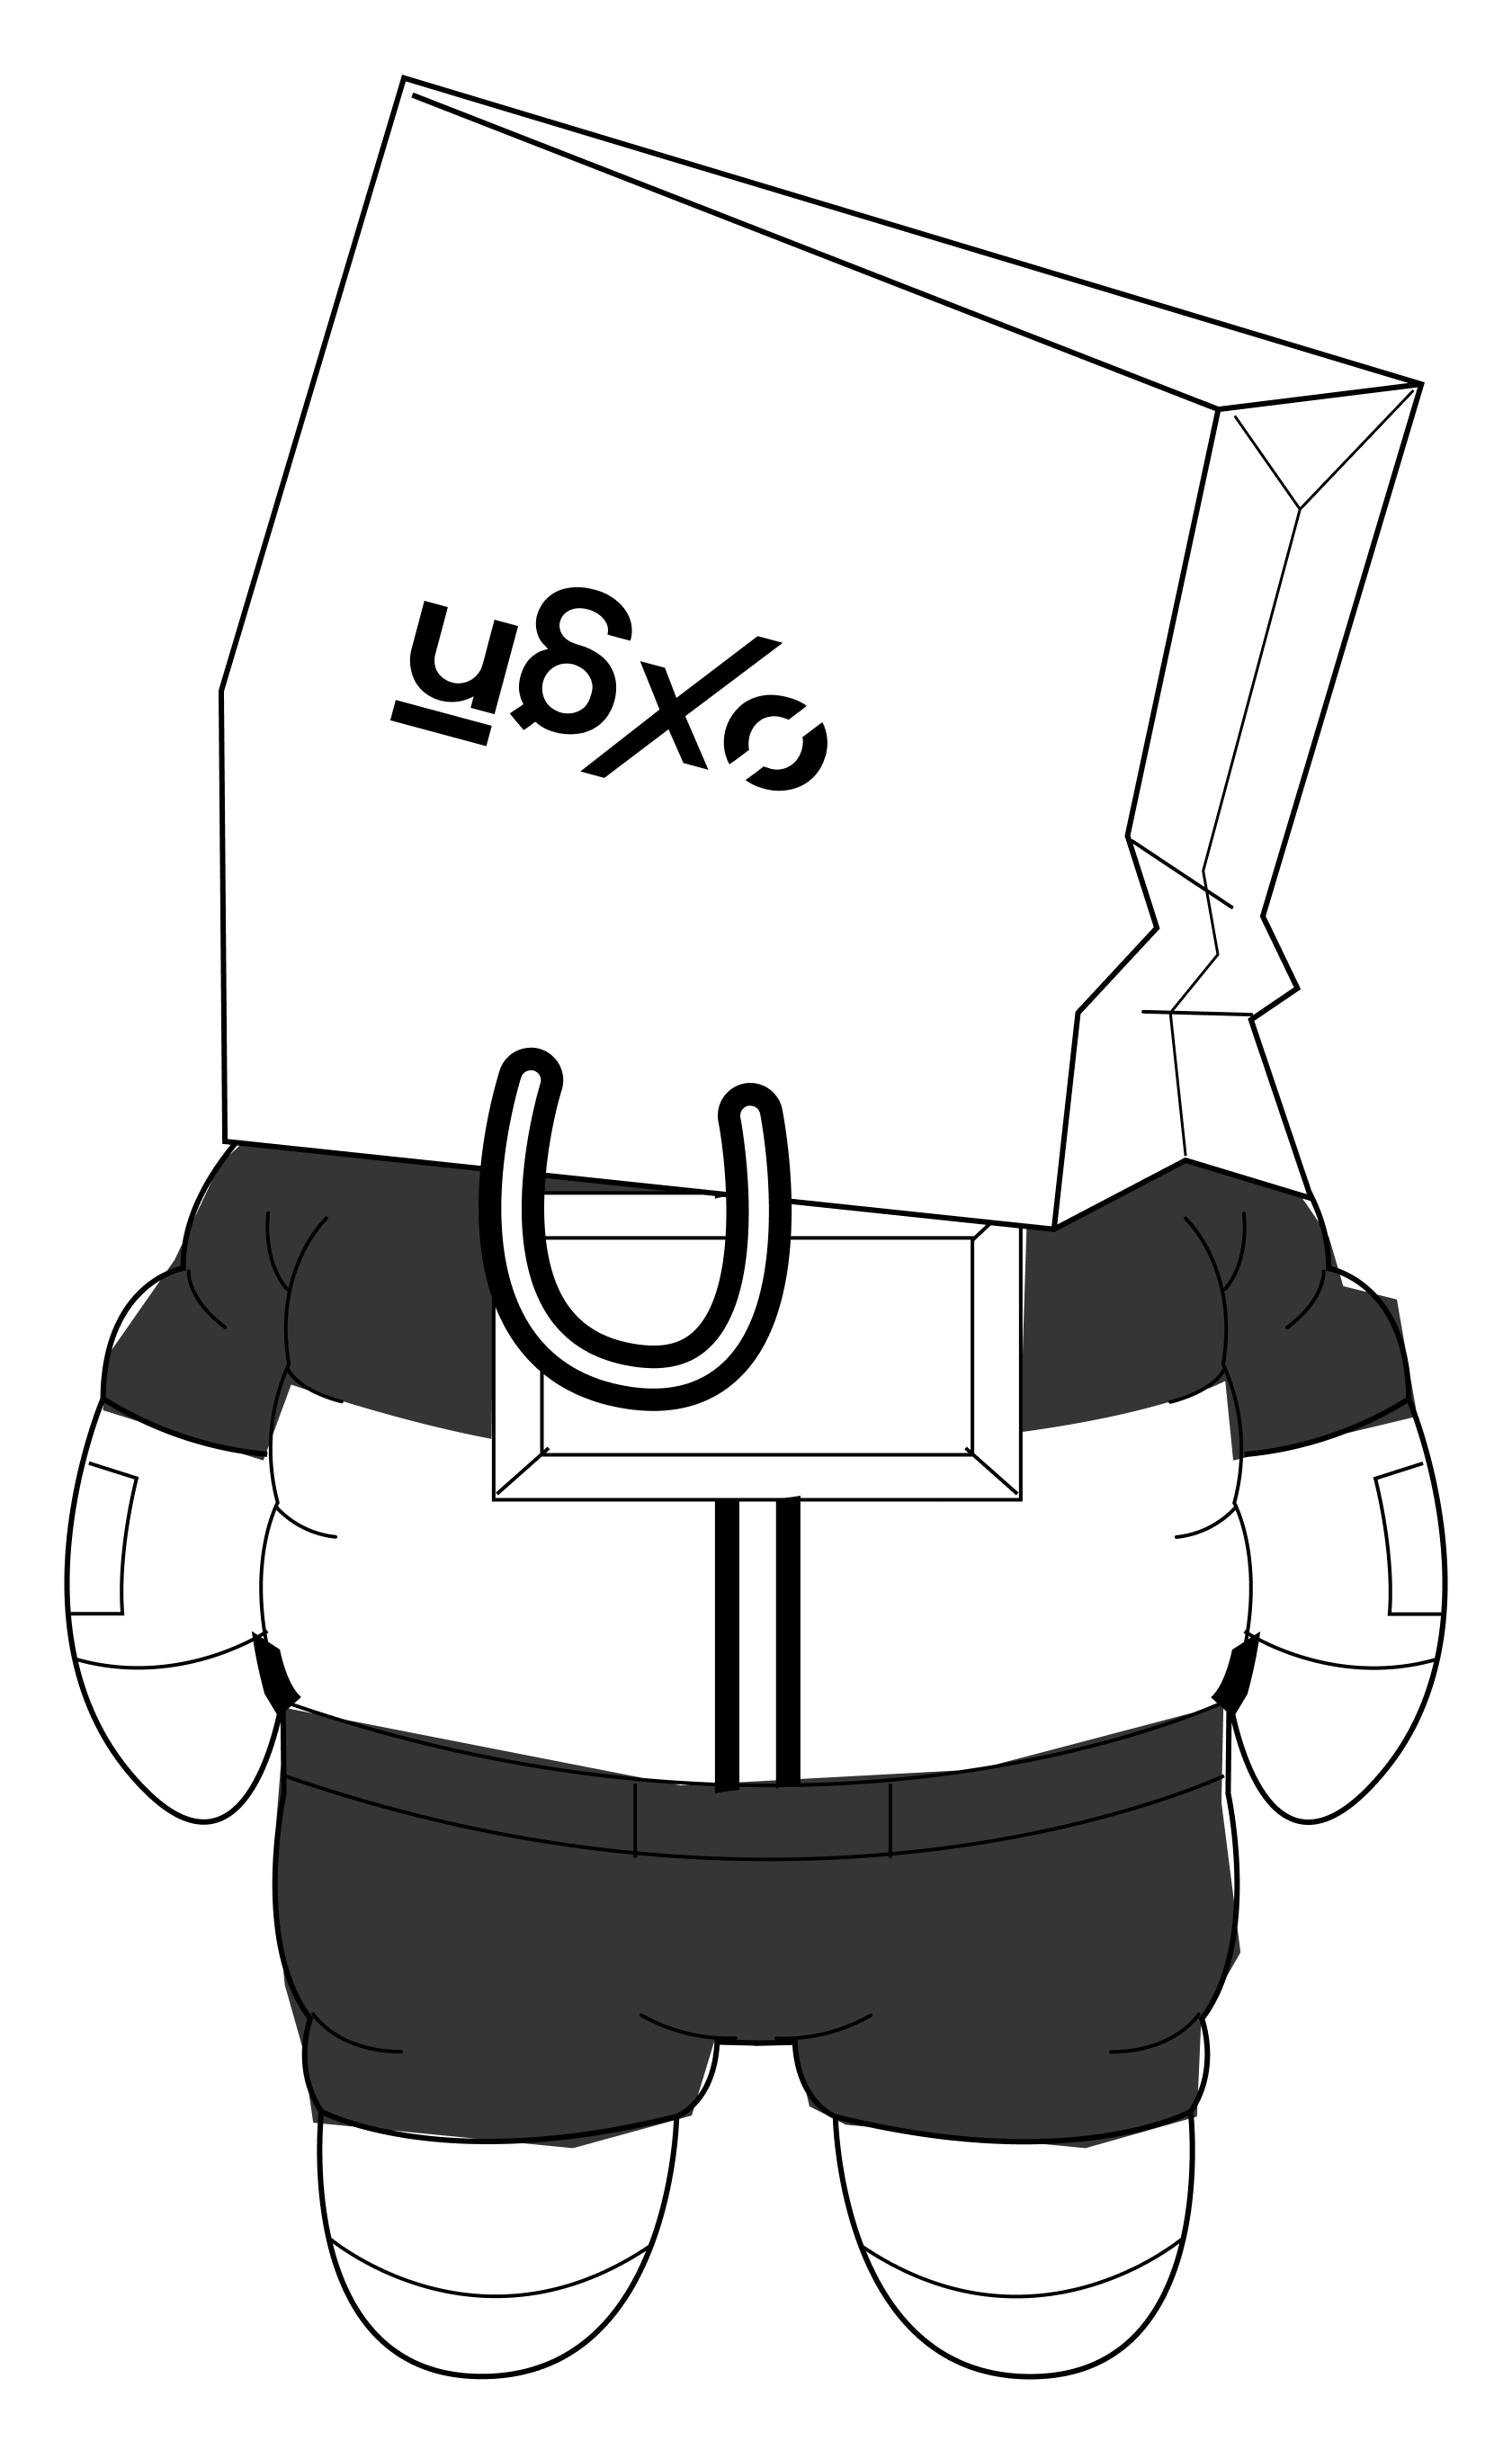 Luffy gear 5 pfp pants roblox｜TikTok Search